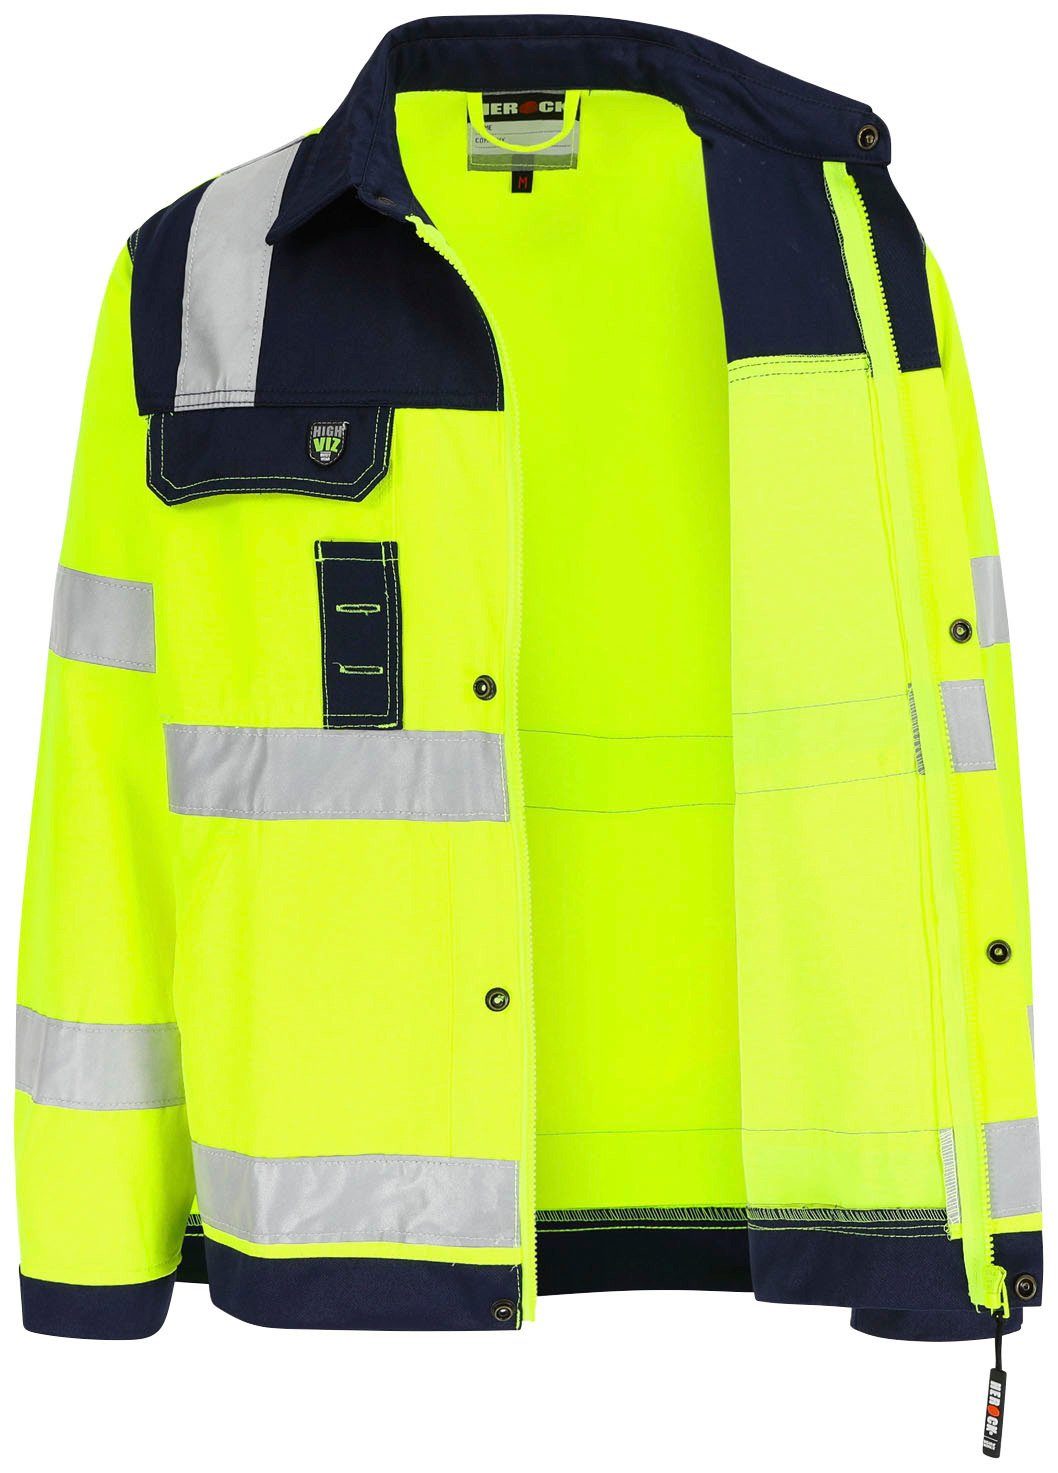 Herock Arbeitsjacke gelb Hochwertig, Taschen, Hydros 5 eintellbare reflektierende Bänder Bündchen, Hochsichtbar 5cm Jacke